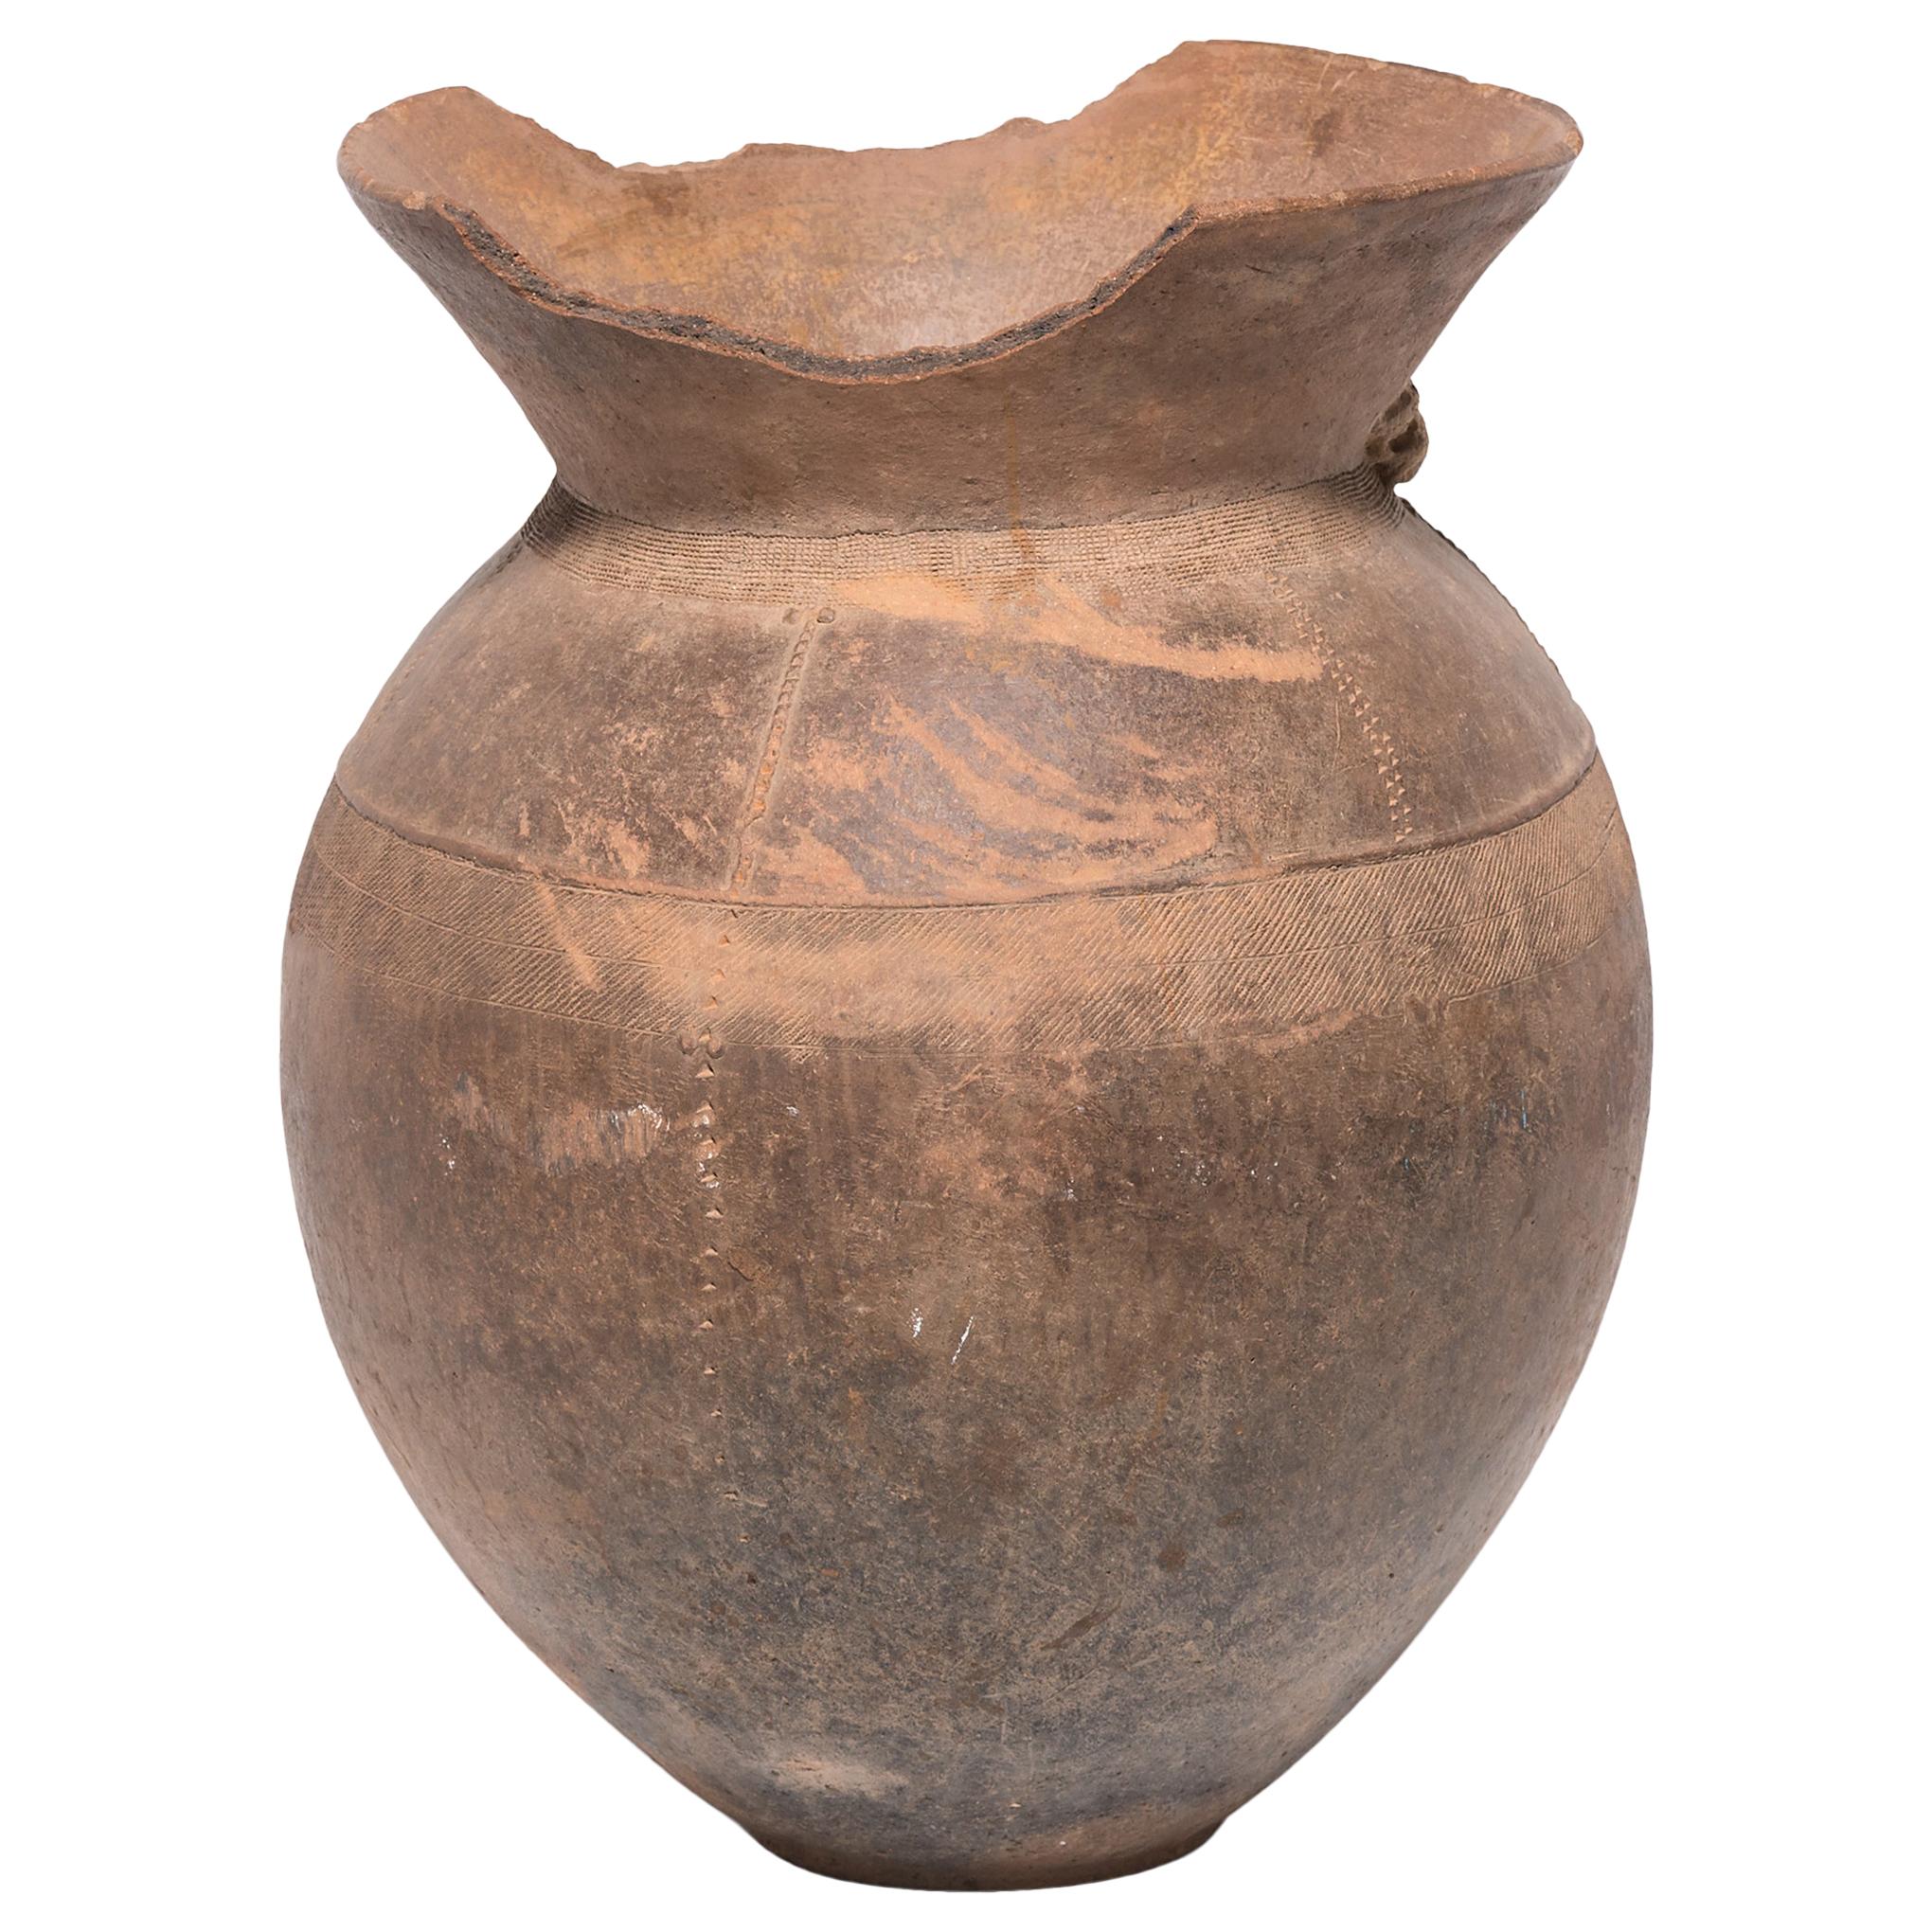 Vase de stockage Nupe nigérian